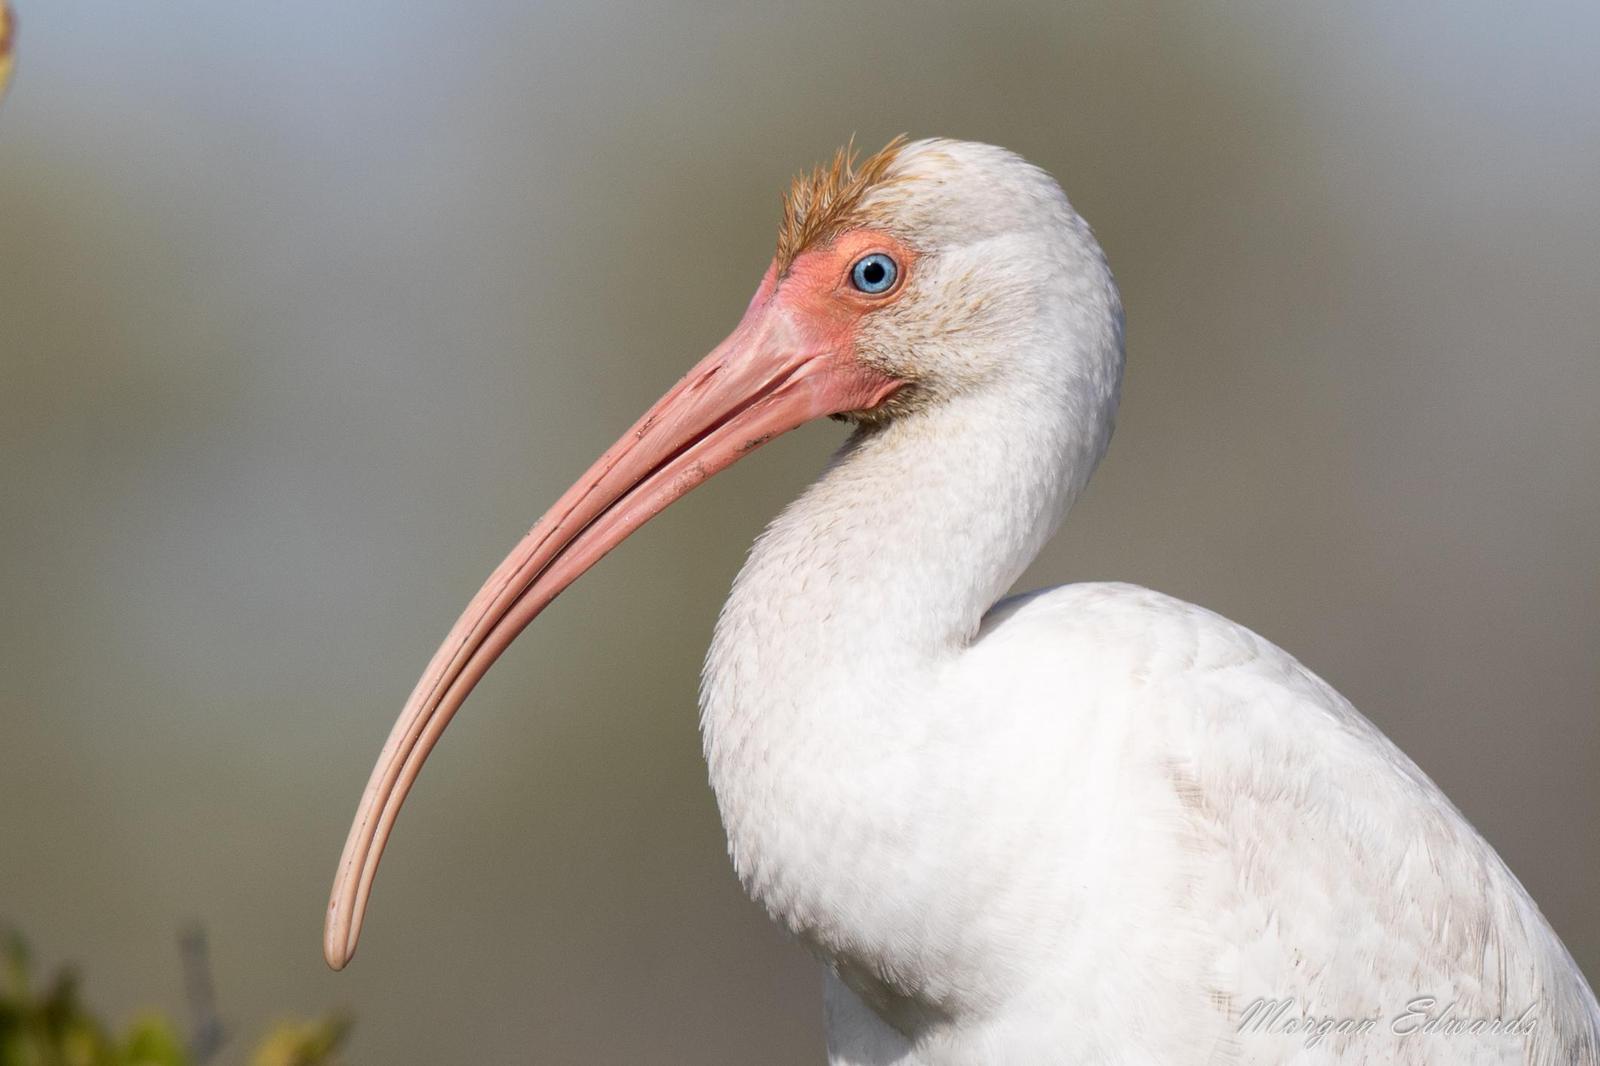 White Ibis Photo by Morgan Edwards